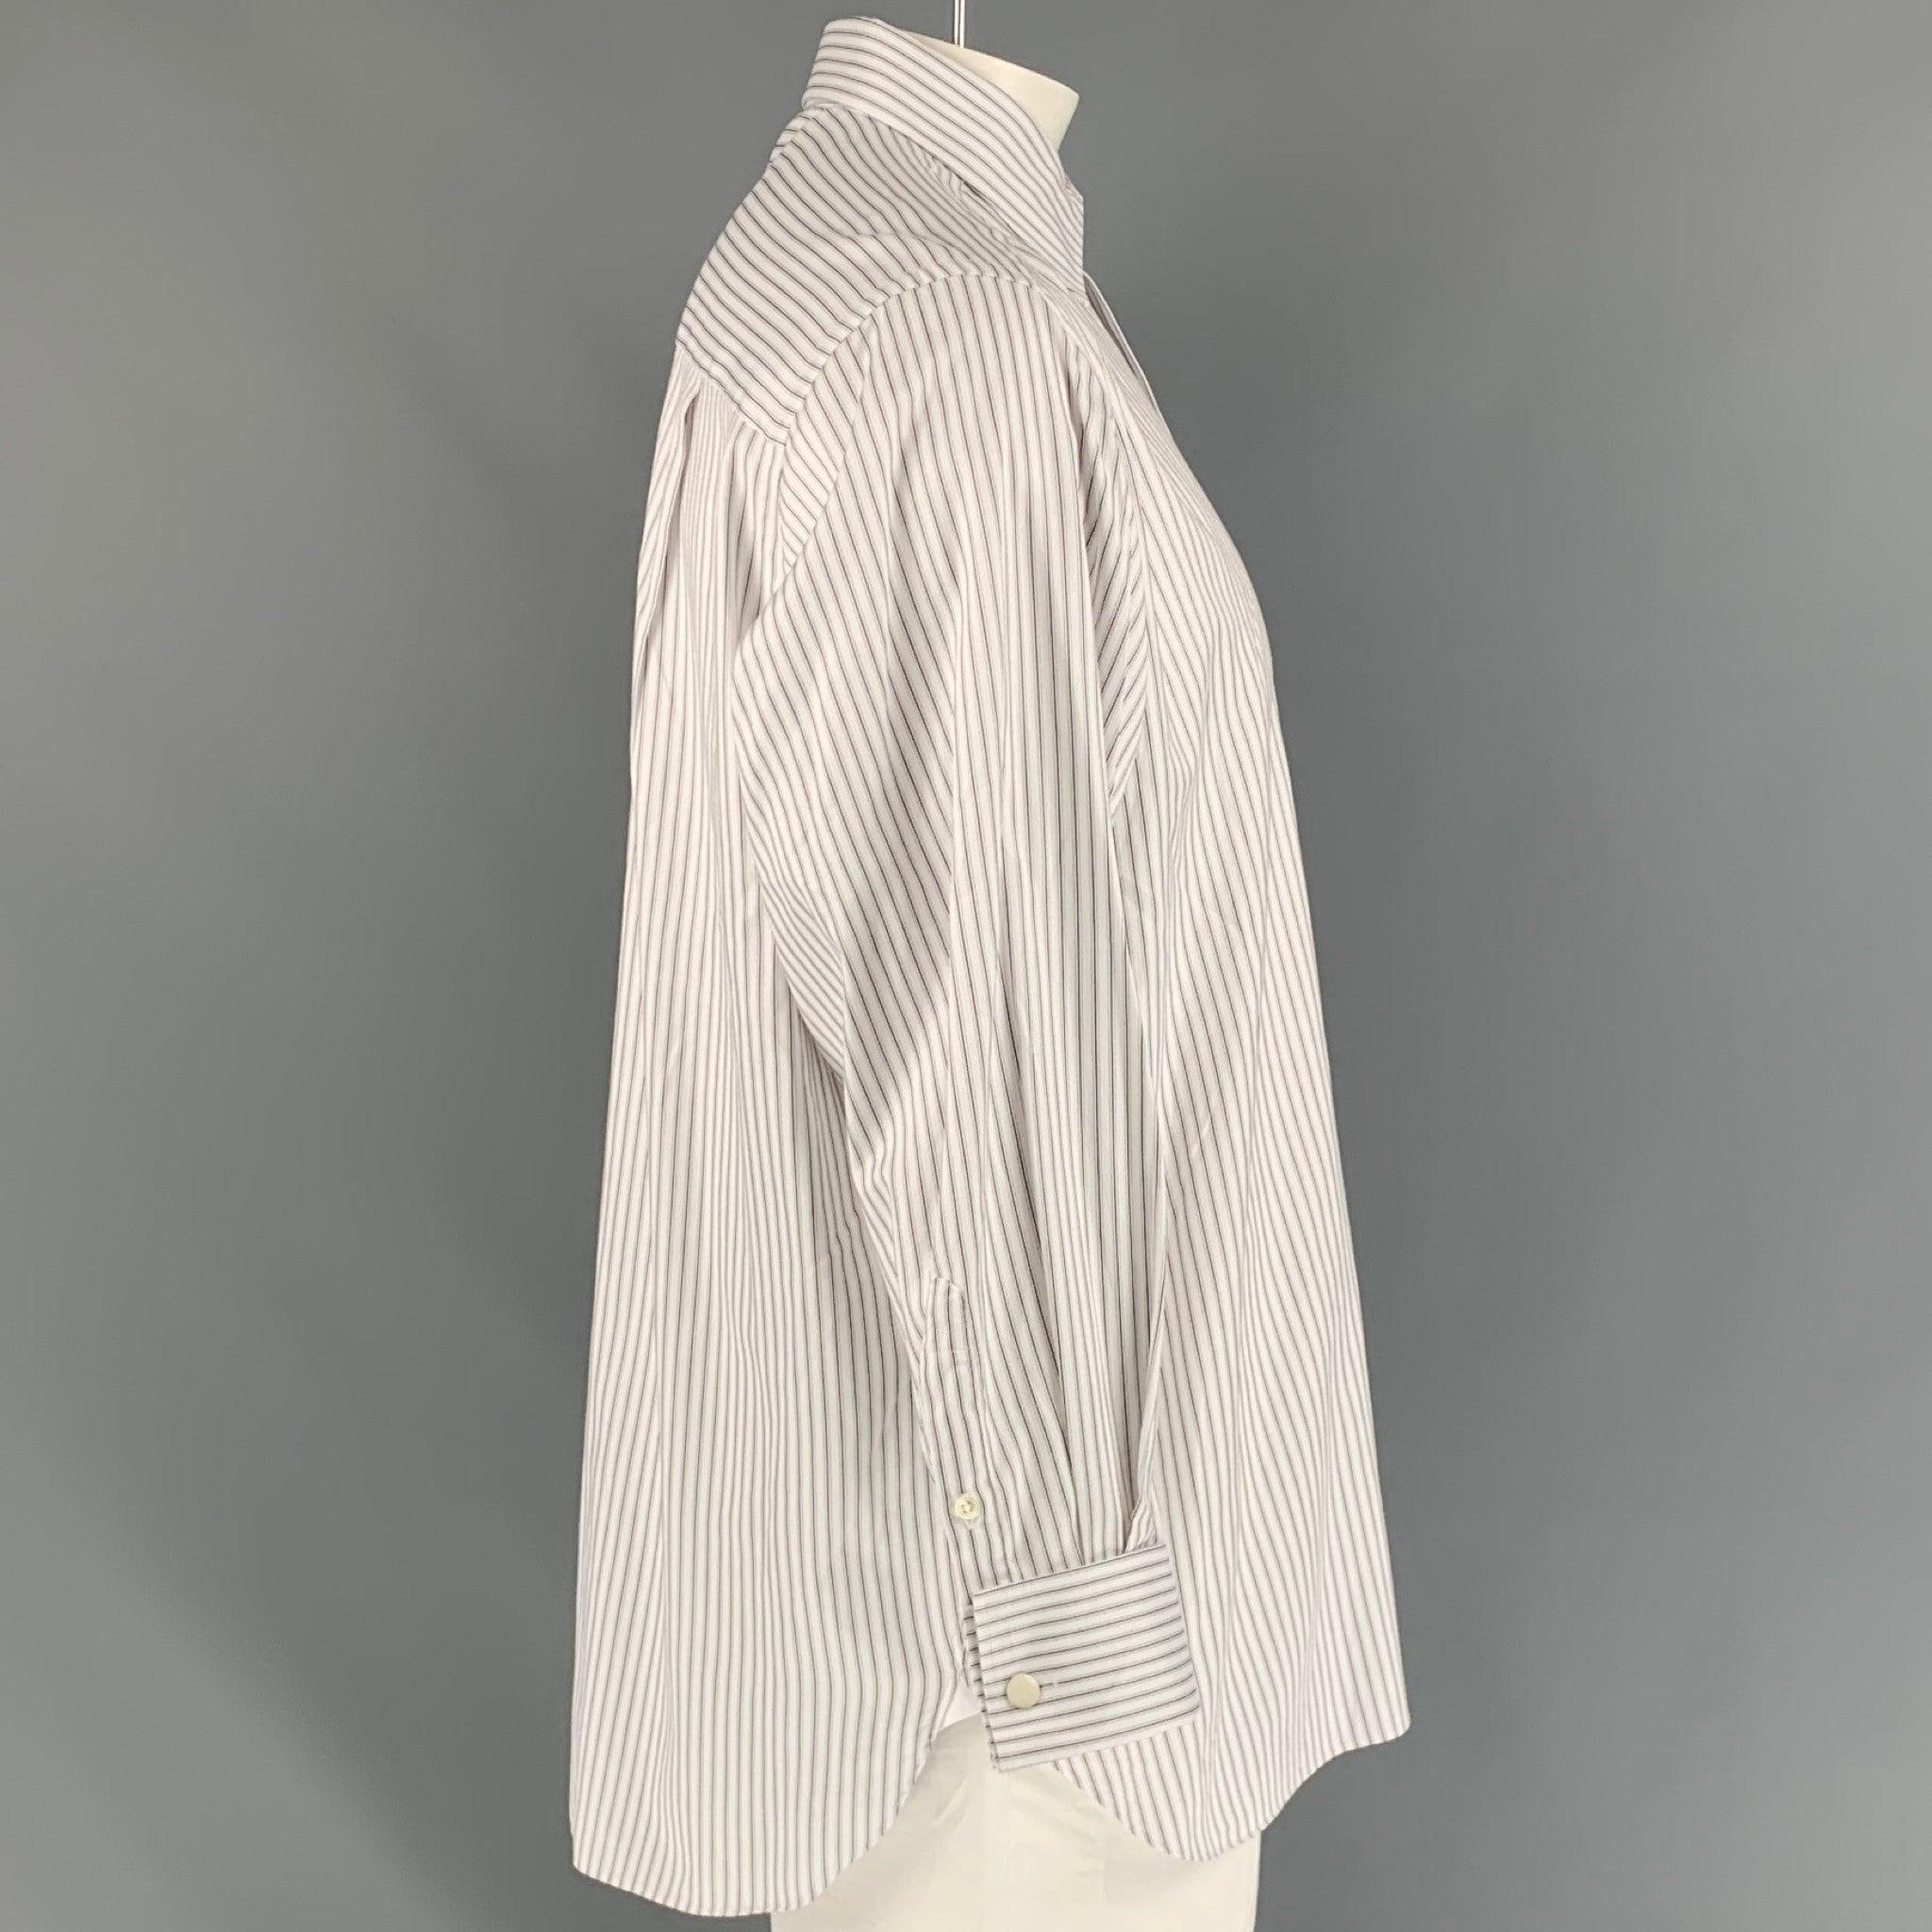 La chemise à manches longues 'Comfort Fit' d'ERMENEGILDO Zegna est réalisée dans un tissu rayé blanc et présente une poche plaquée sur le devant gauche, un col large, des poignets carrés français et une fermeture à boutons. Made in Spainches Très